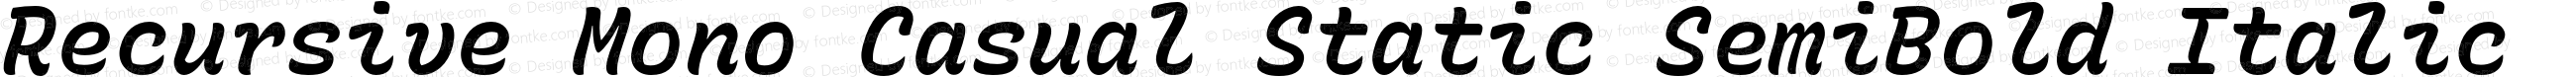 Recursive Mono Casual Static SemiBold Italic